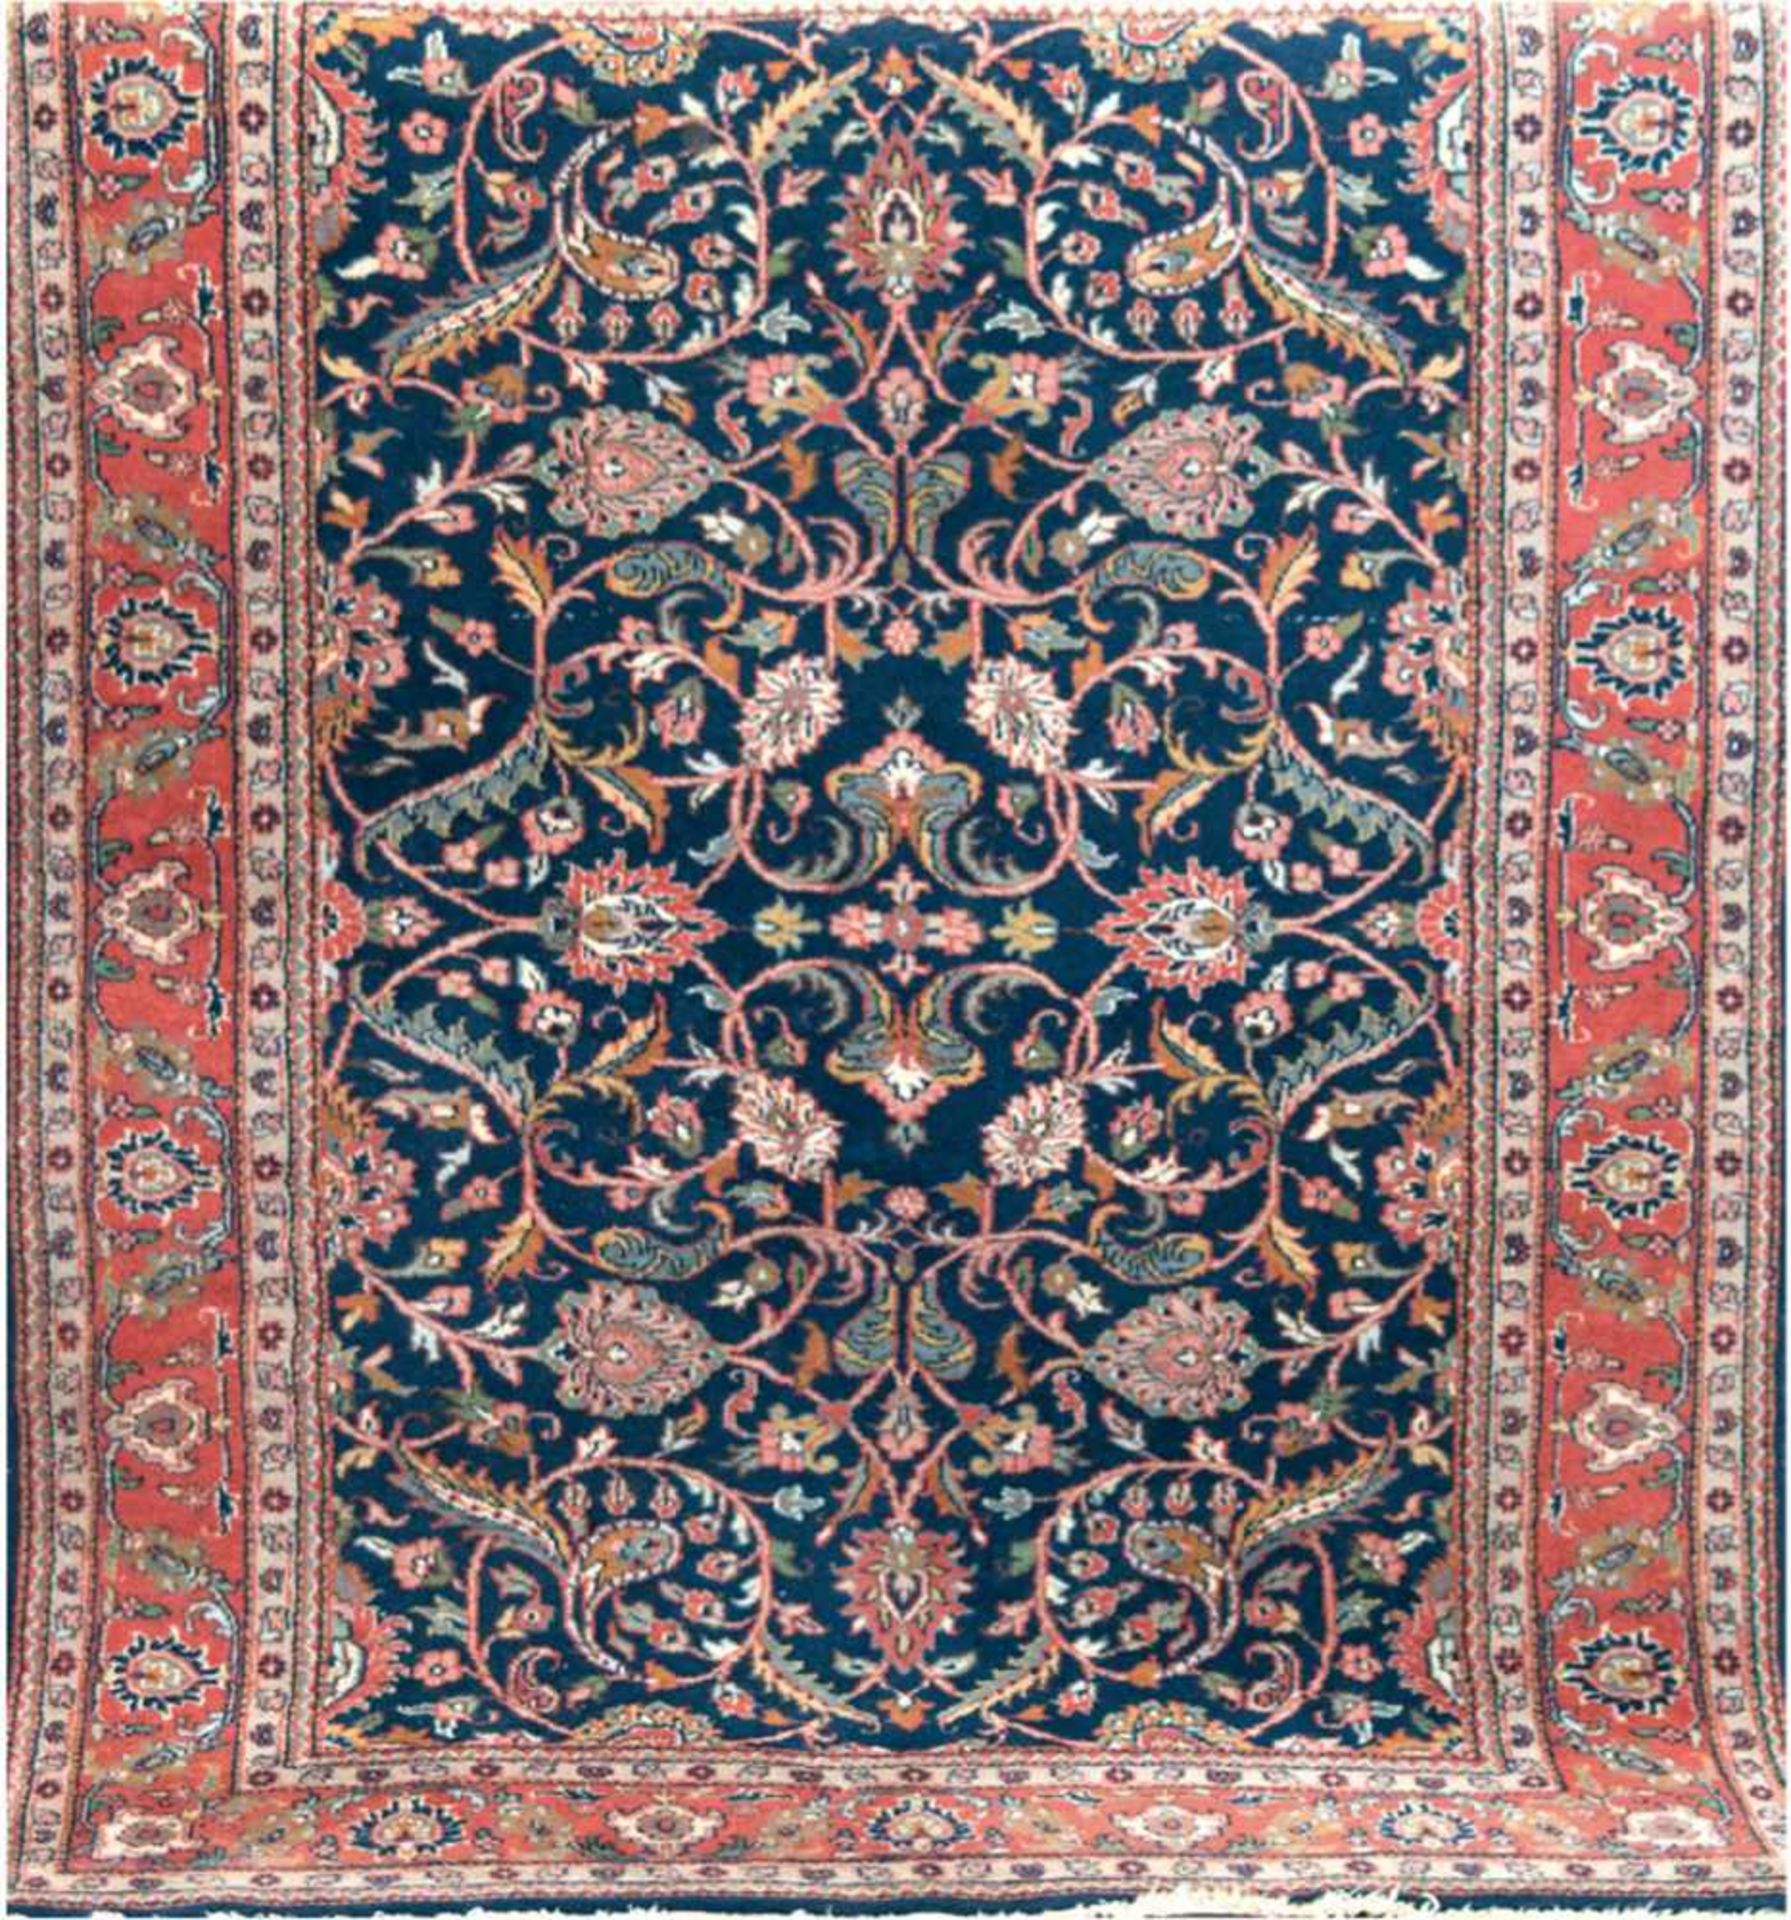 Hamadan, rot-, blaugrundig mit zentralem Medaillon und floralen Motiven, Kanten belaufen,2 Ecken